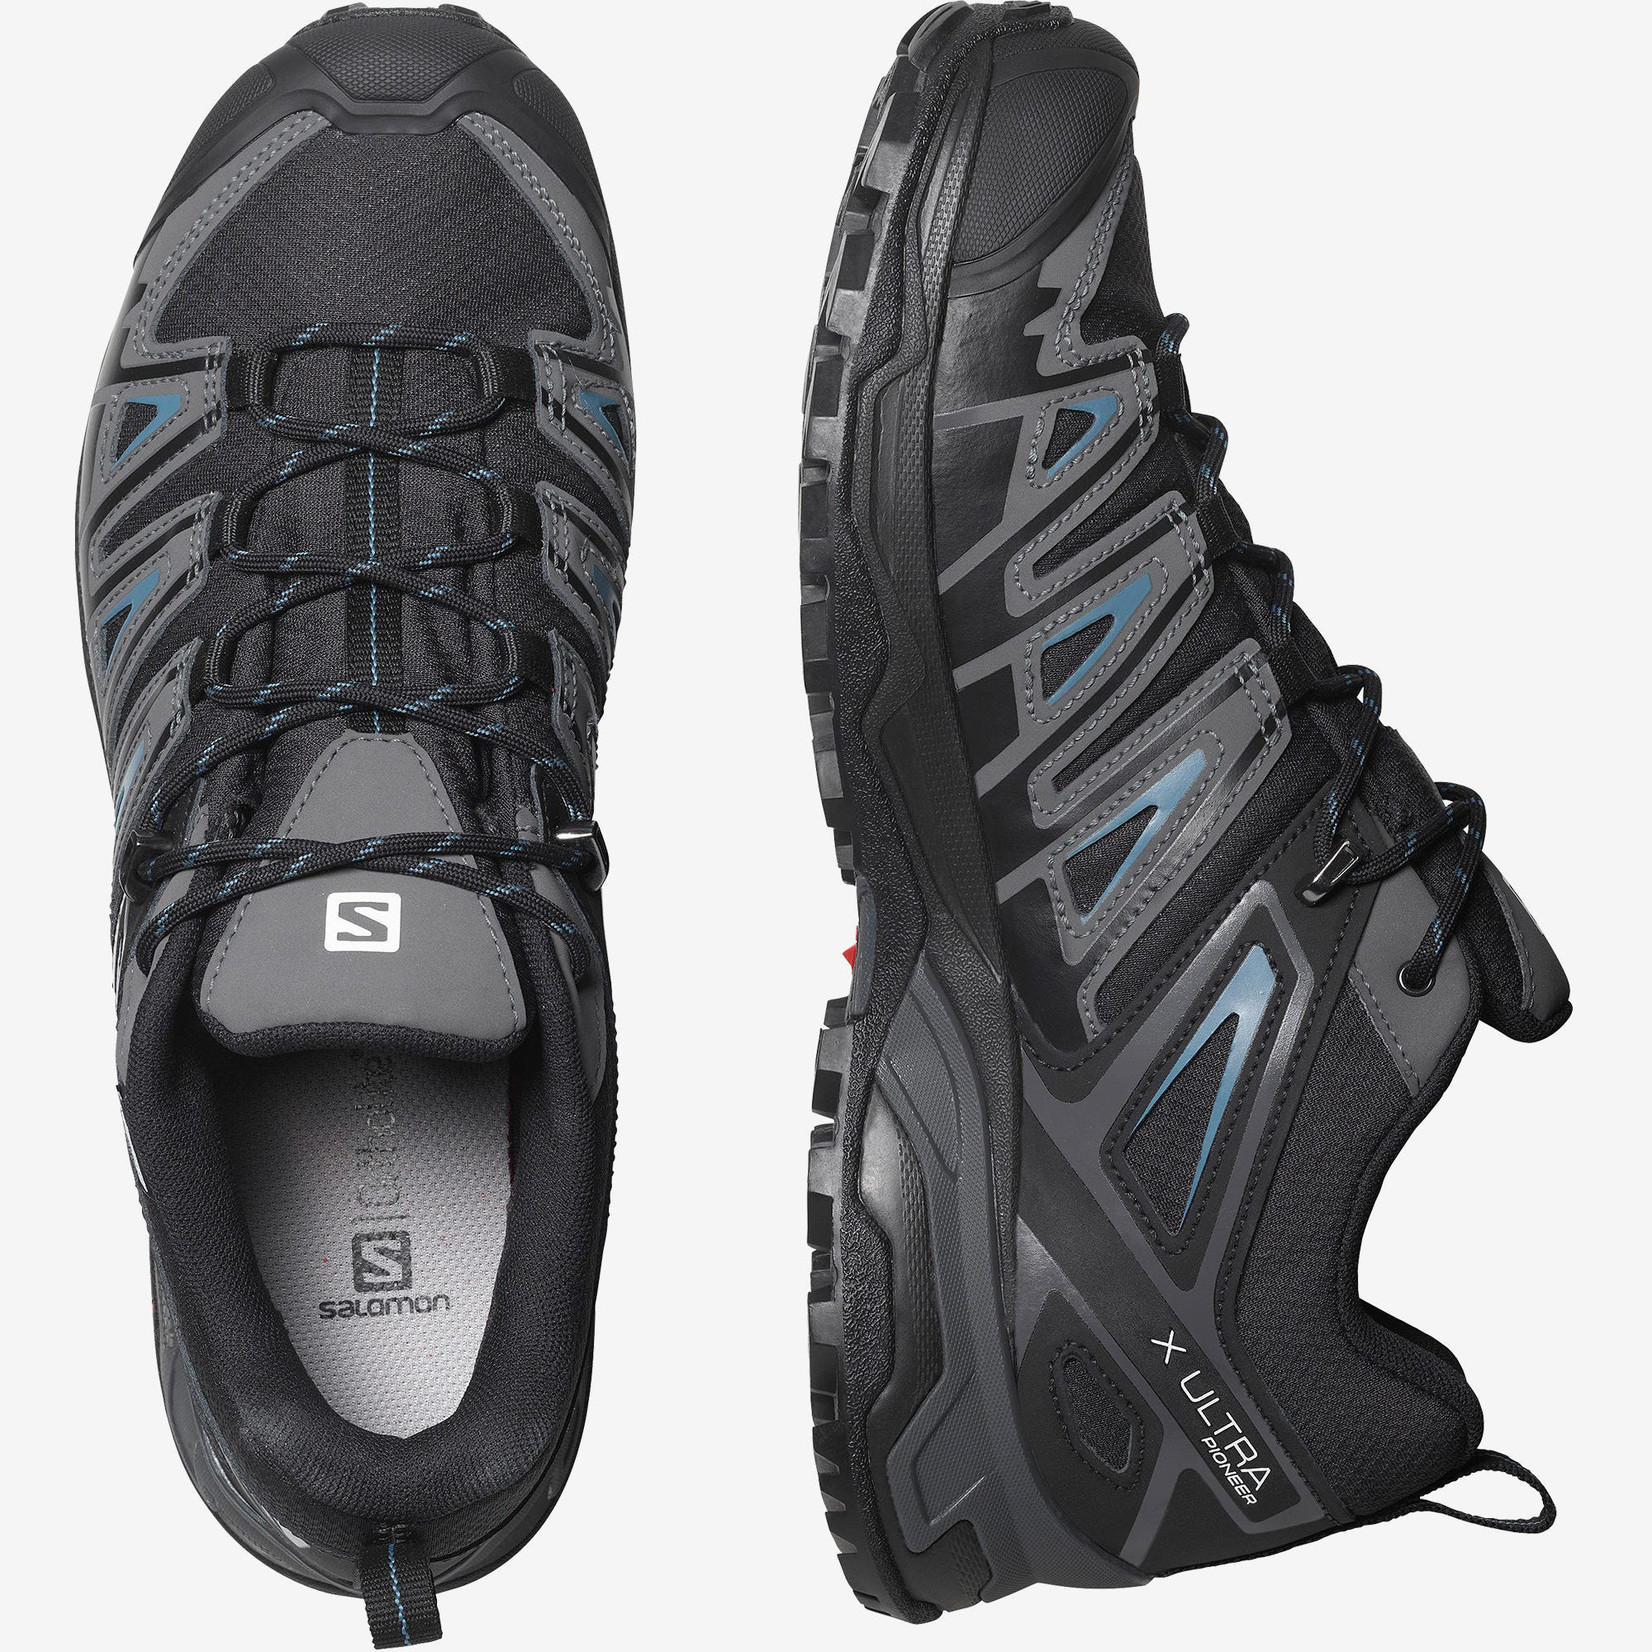 Salomon Salomon Men's X Ultra Pioneer CSWP Waterproof Hiking Shoes